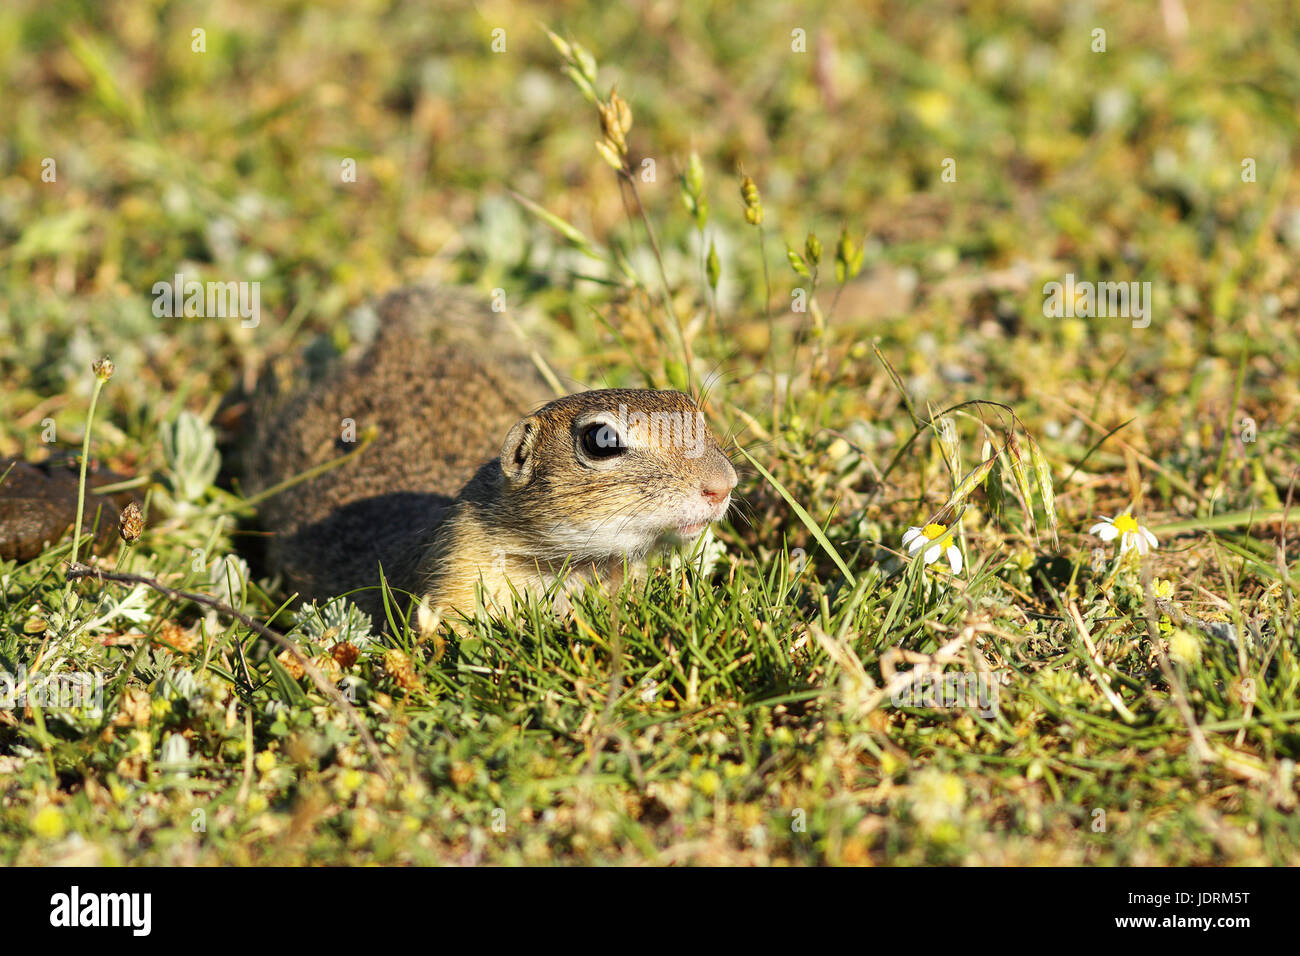 Carino terreno europeo scoiattolo in habitat naturali, closeup gu capretti animale ( Spermophilus citellus ) Foto Stock